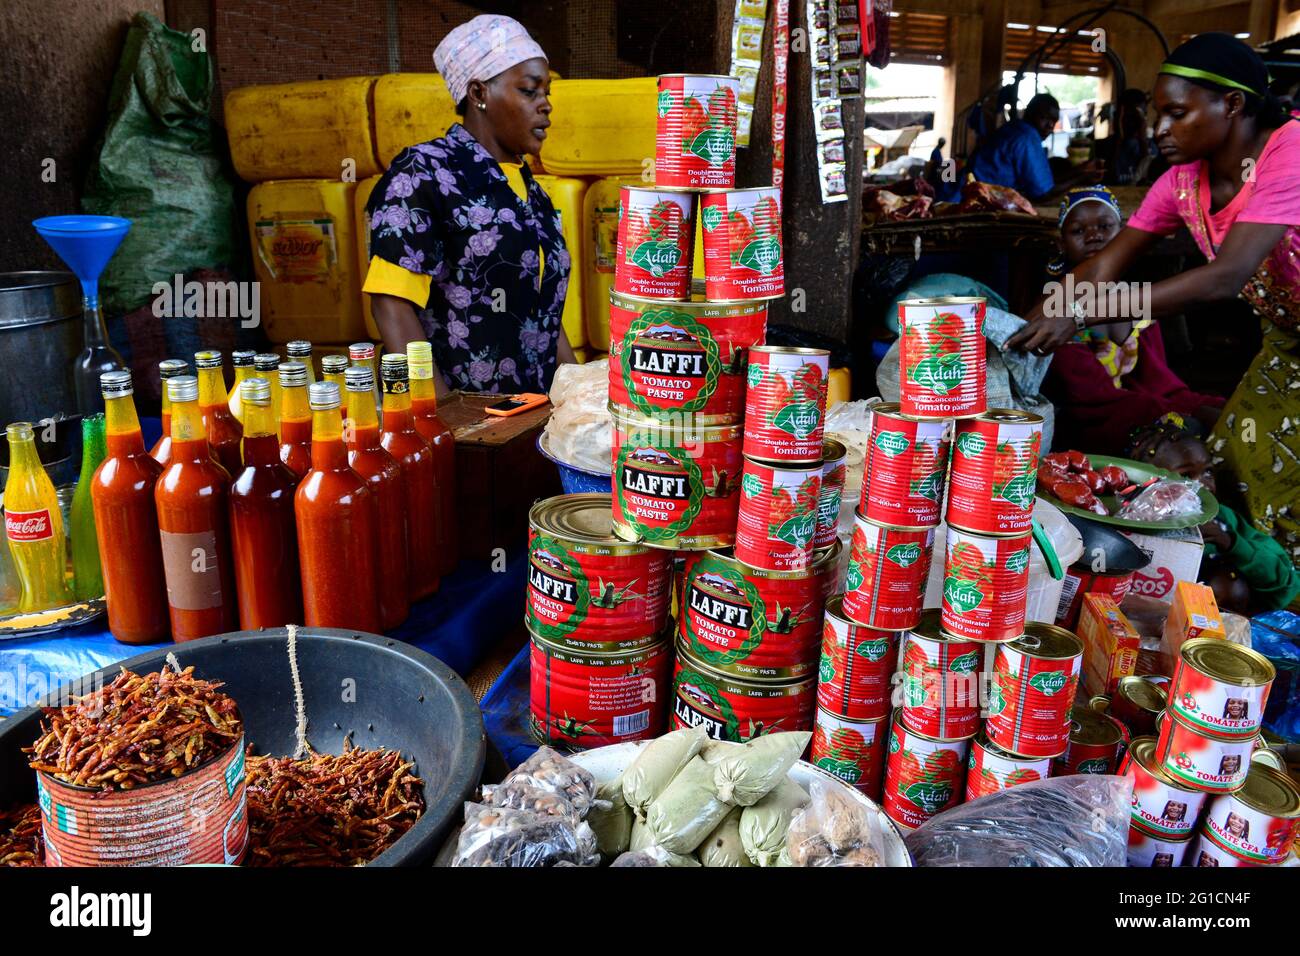 BURKINA FASO, Bobo Dioulasso, Grande MARCHE, market, selling of